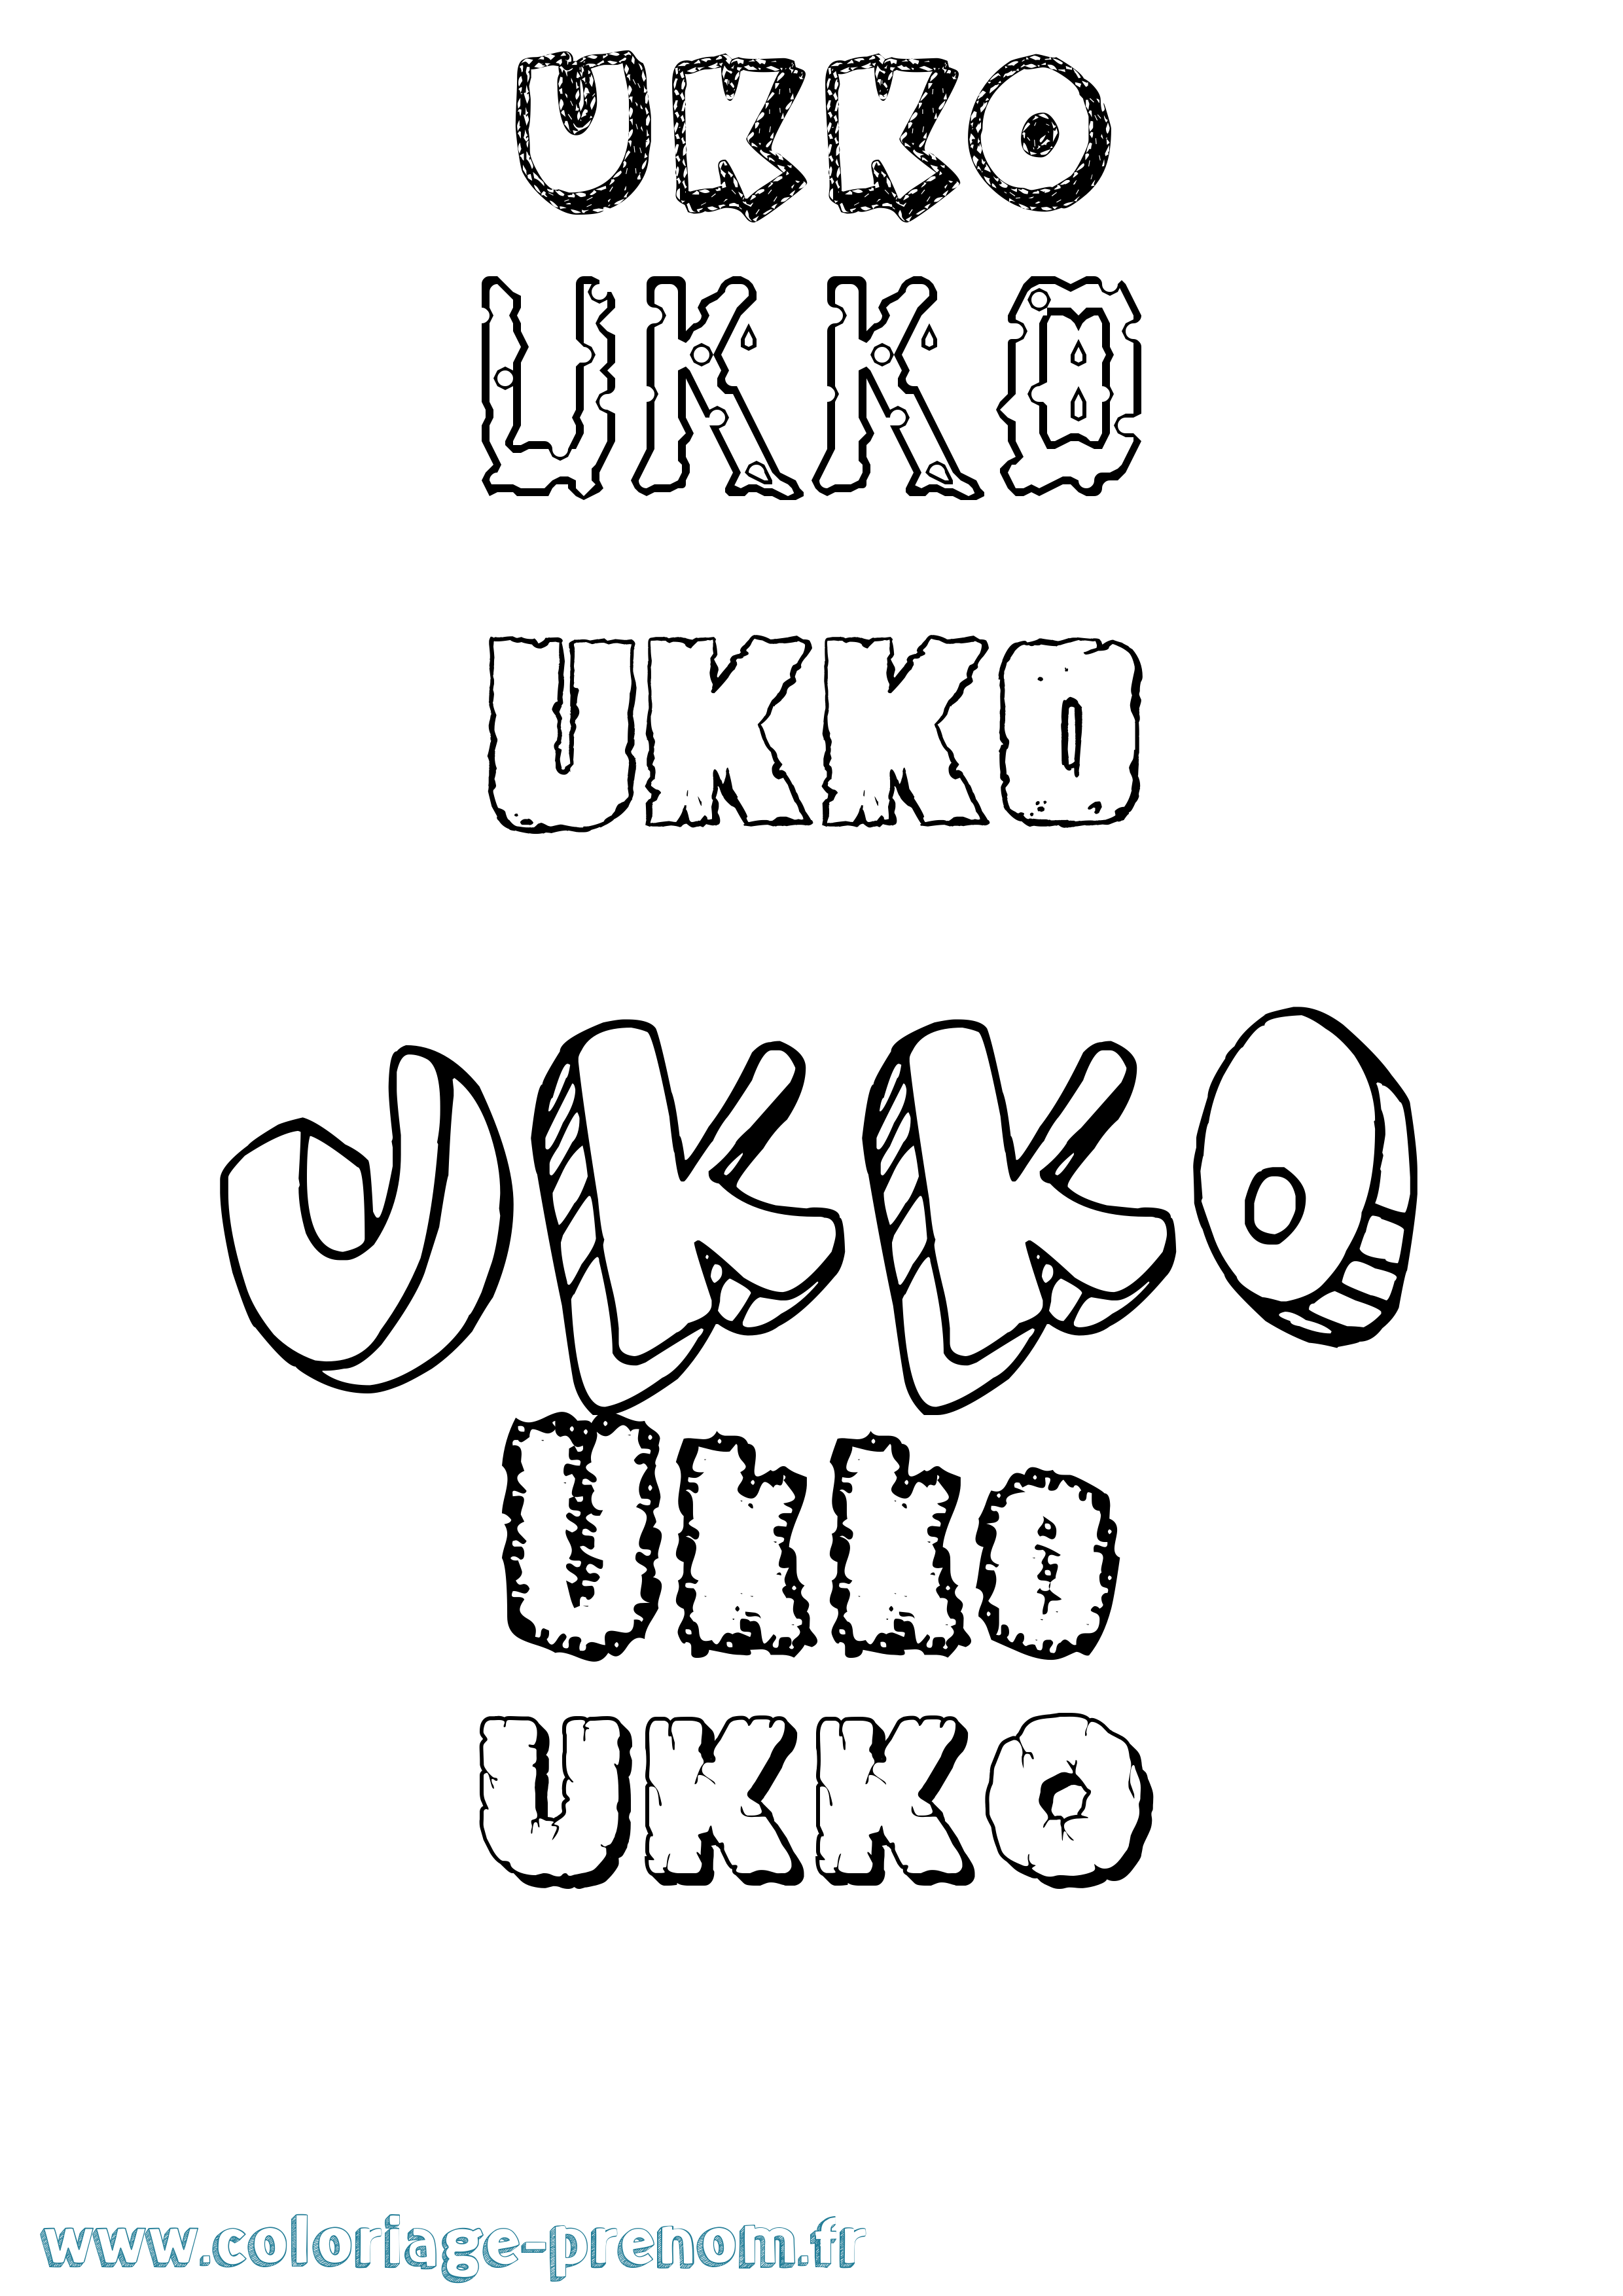 Coloriage prénom Ukko Destructuré